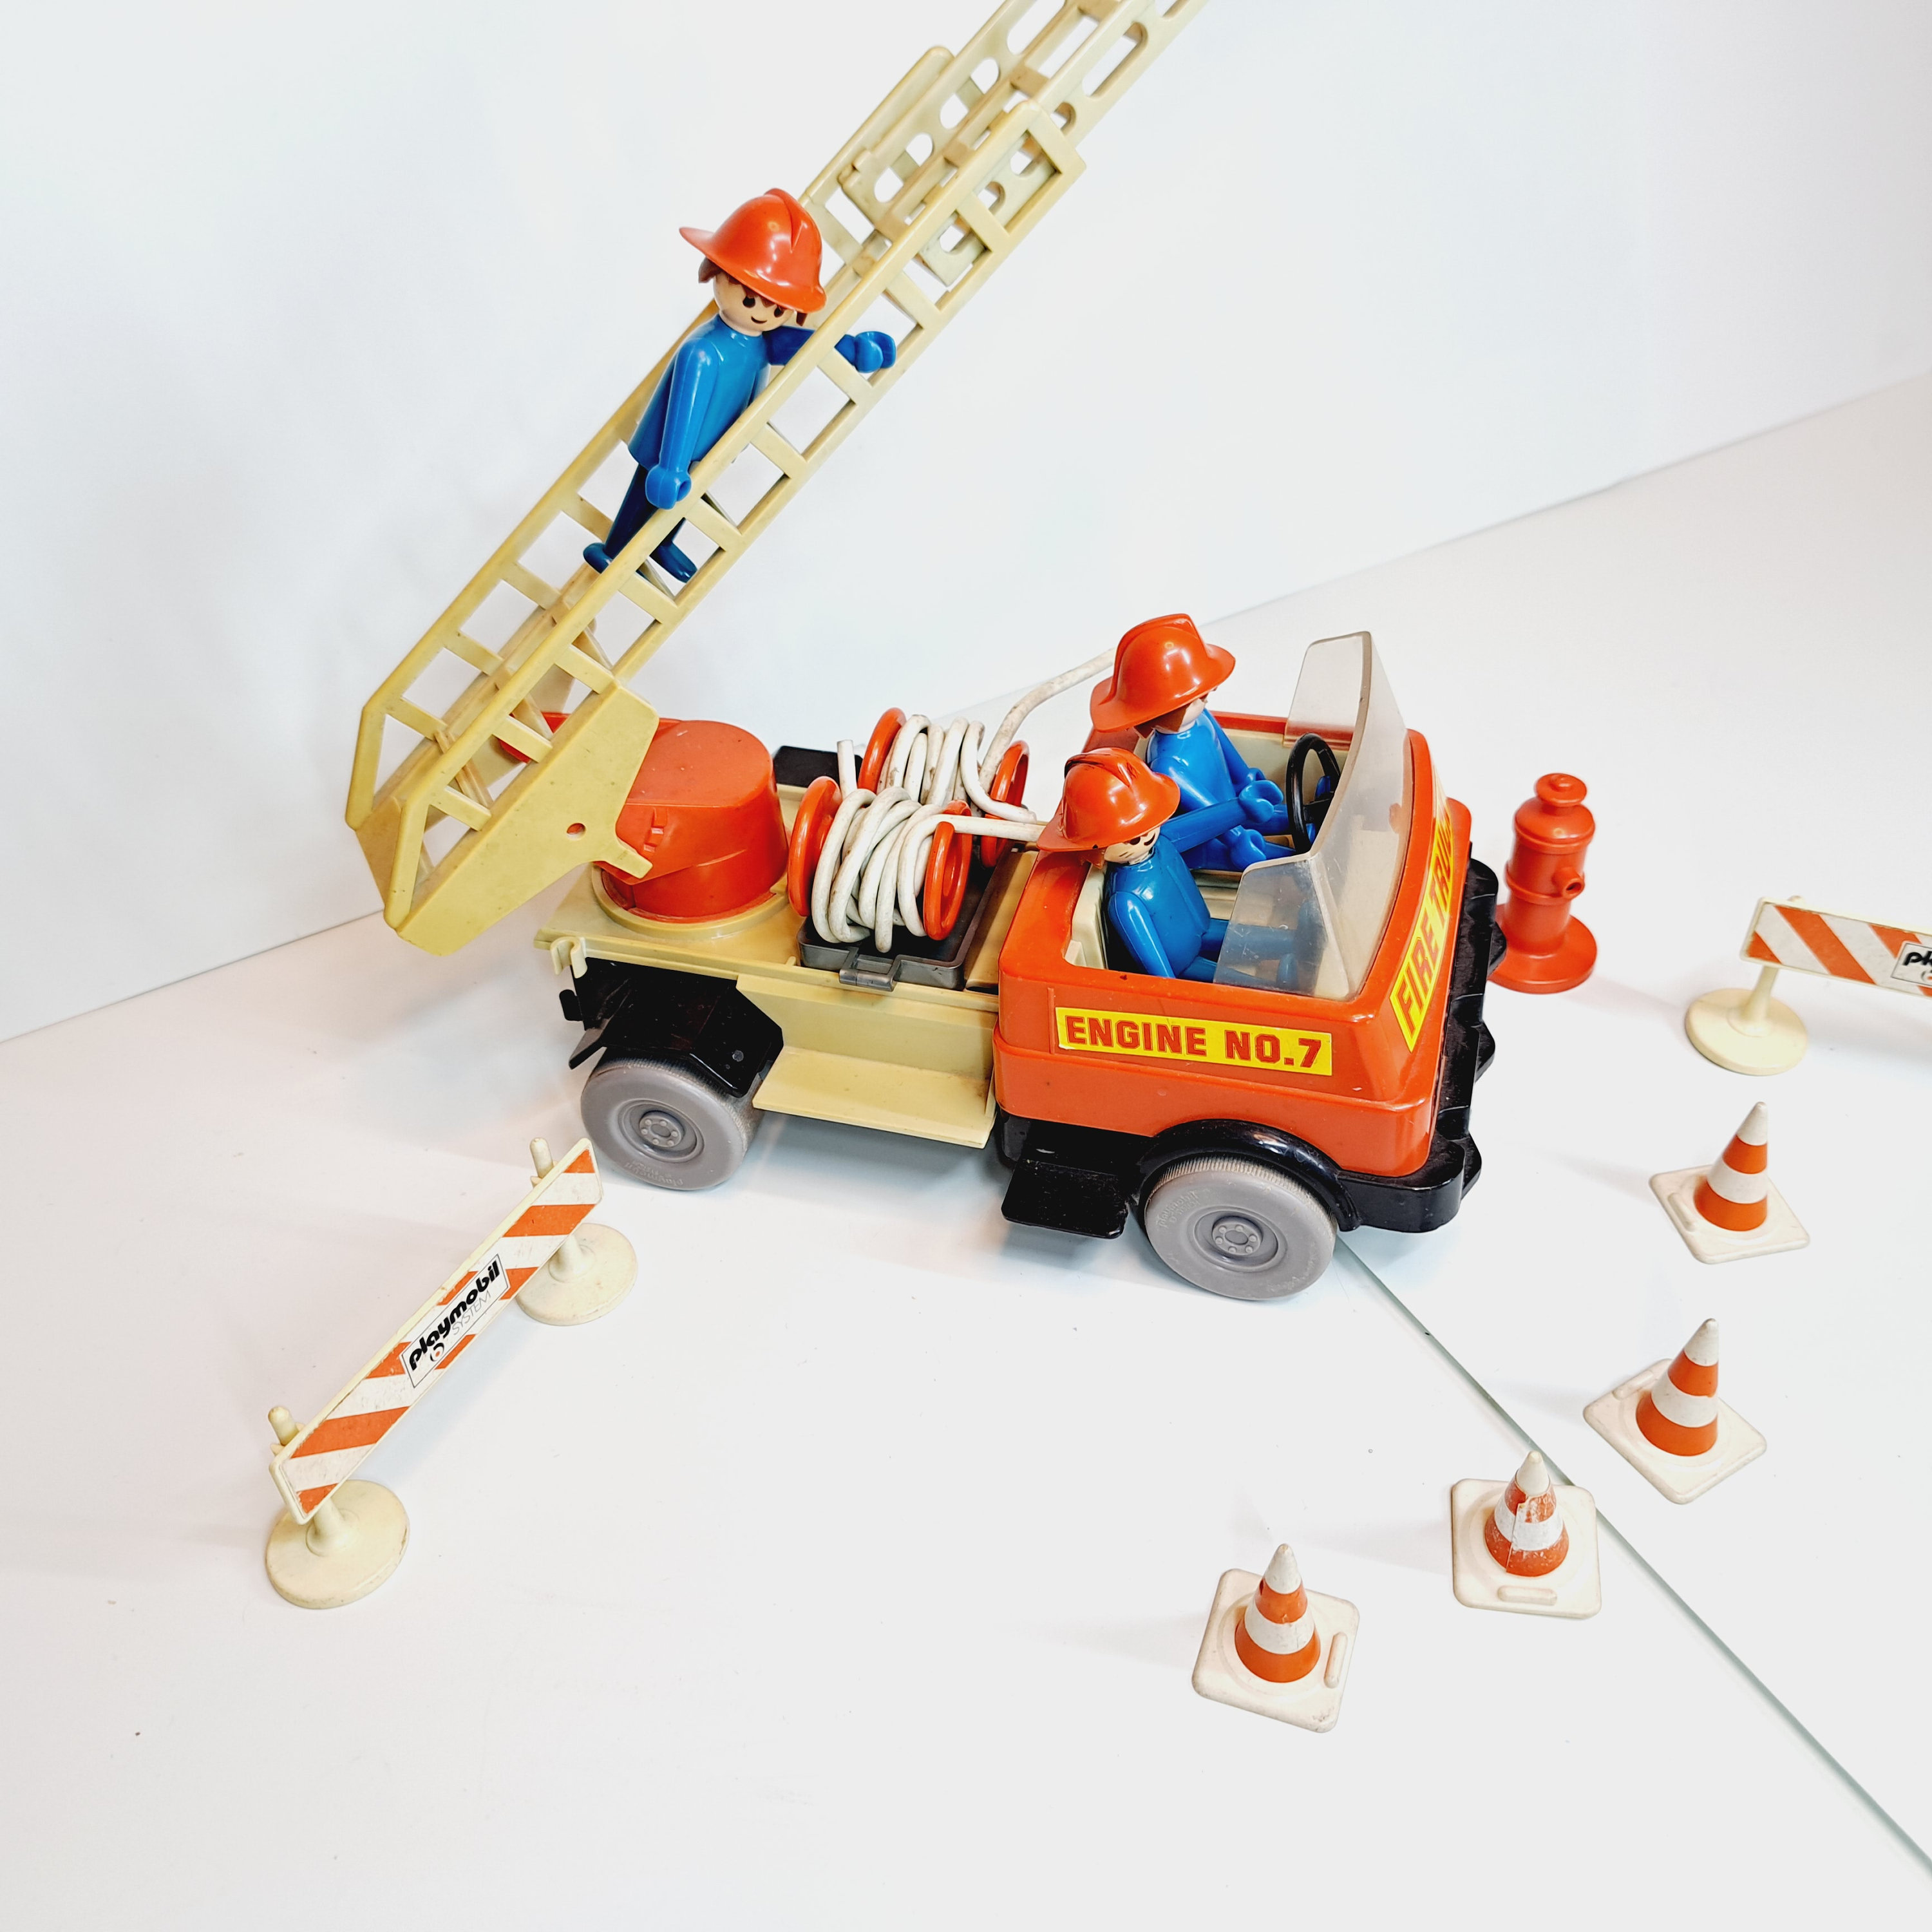 Camion de pompier Playmobil System 3236 - jouets rétro jeux de